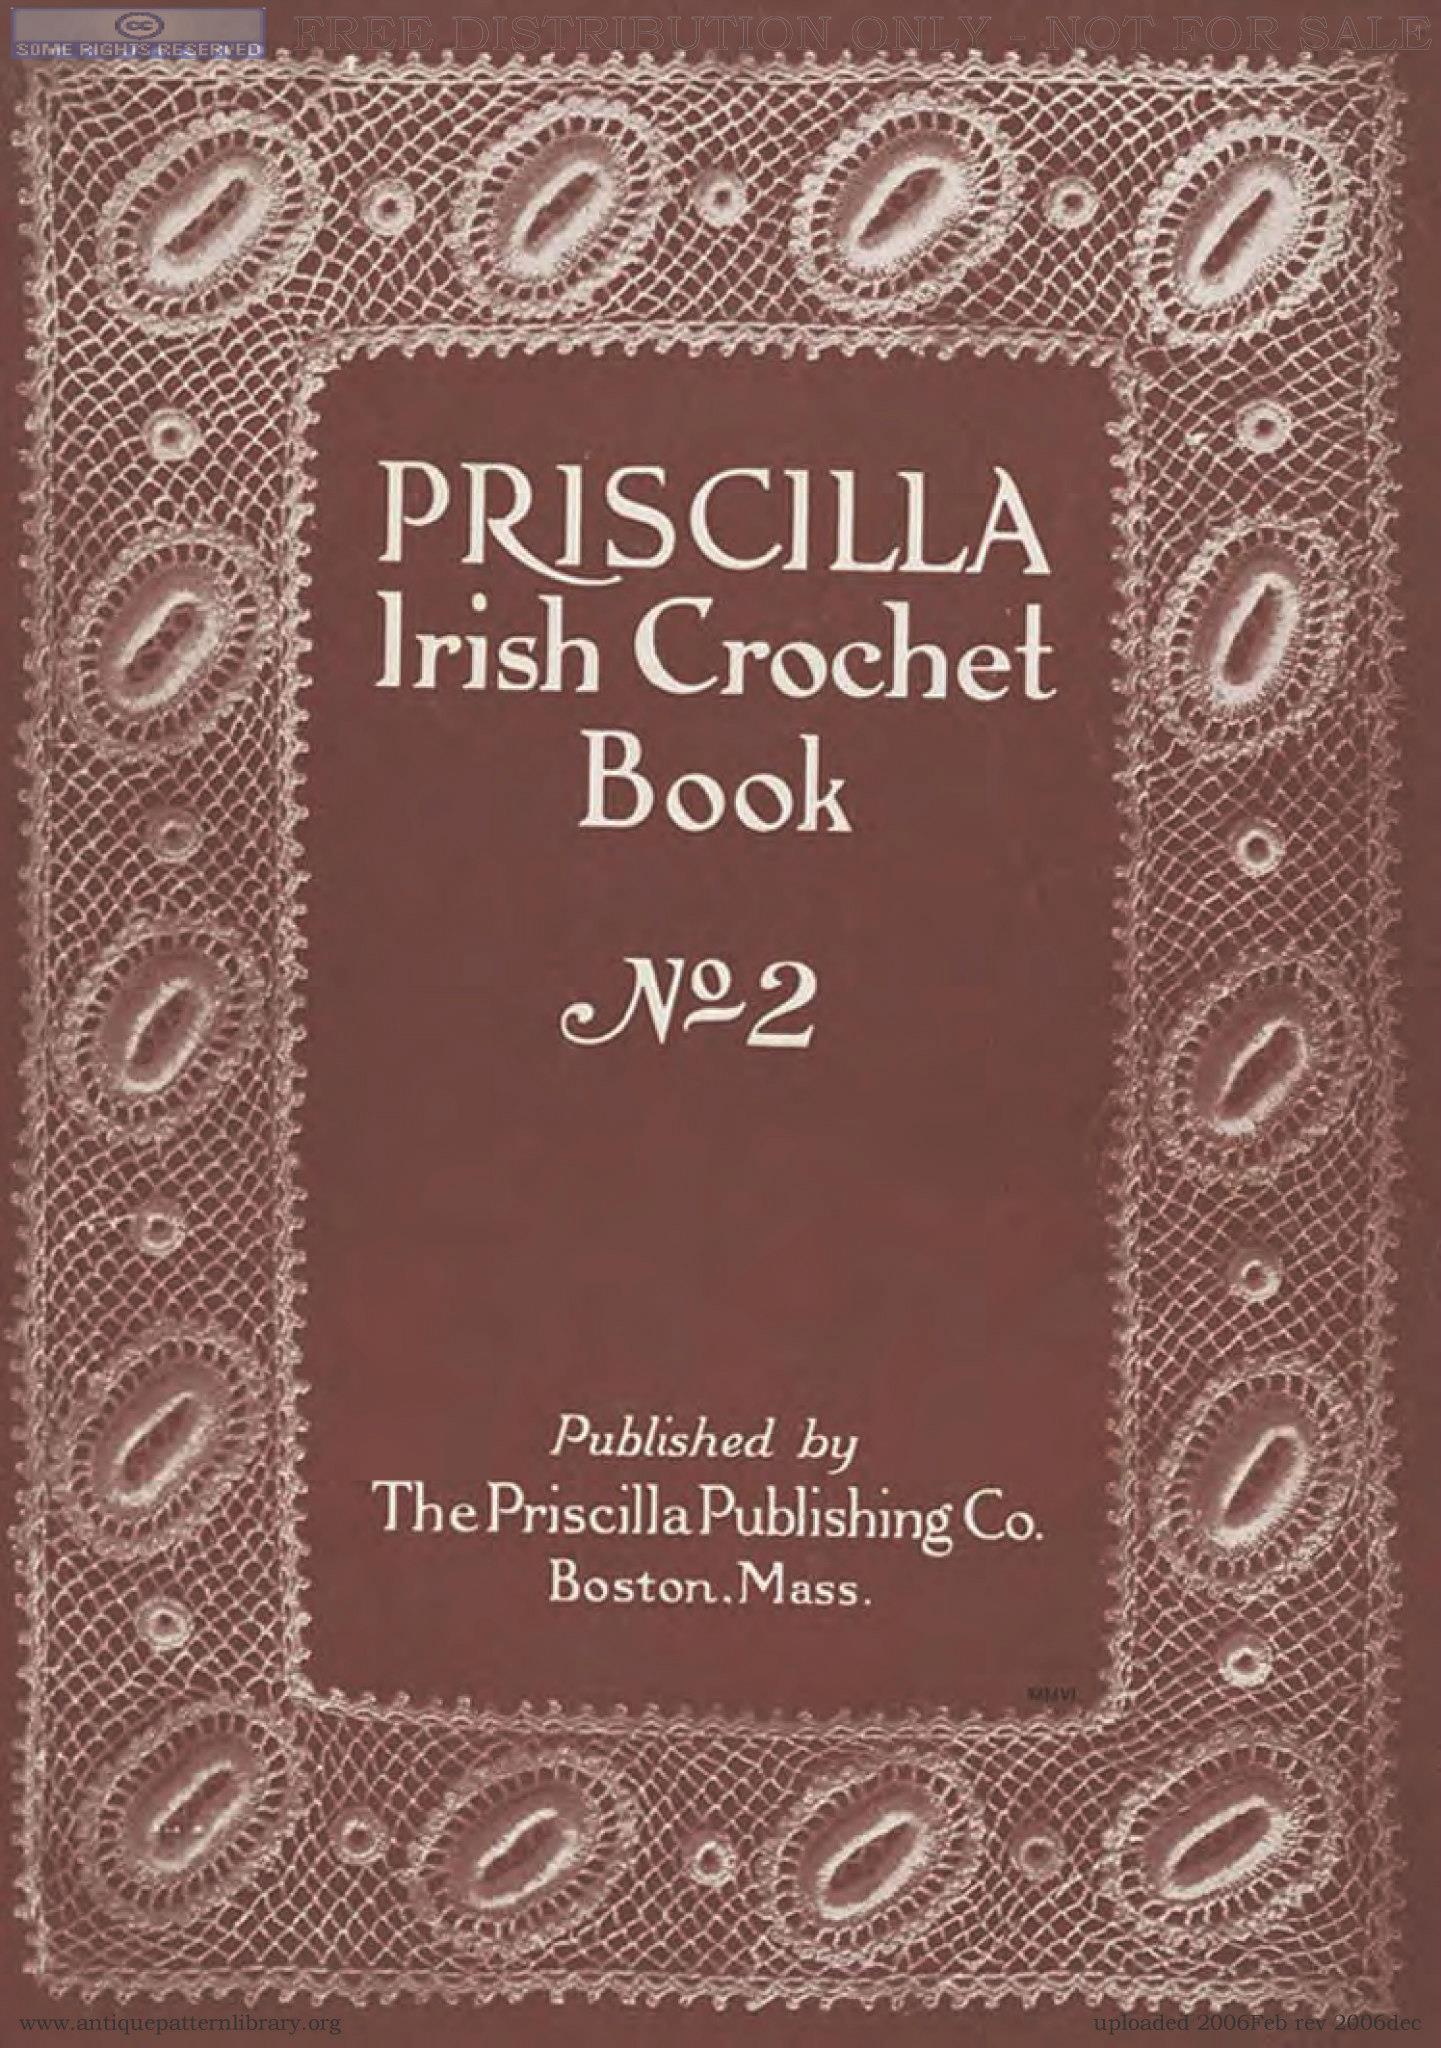 Crochet Book Review – Priscilla Irish Crochet Book 1 & 2